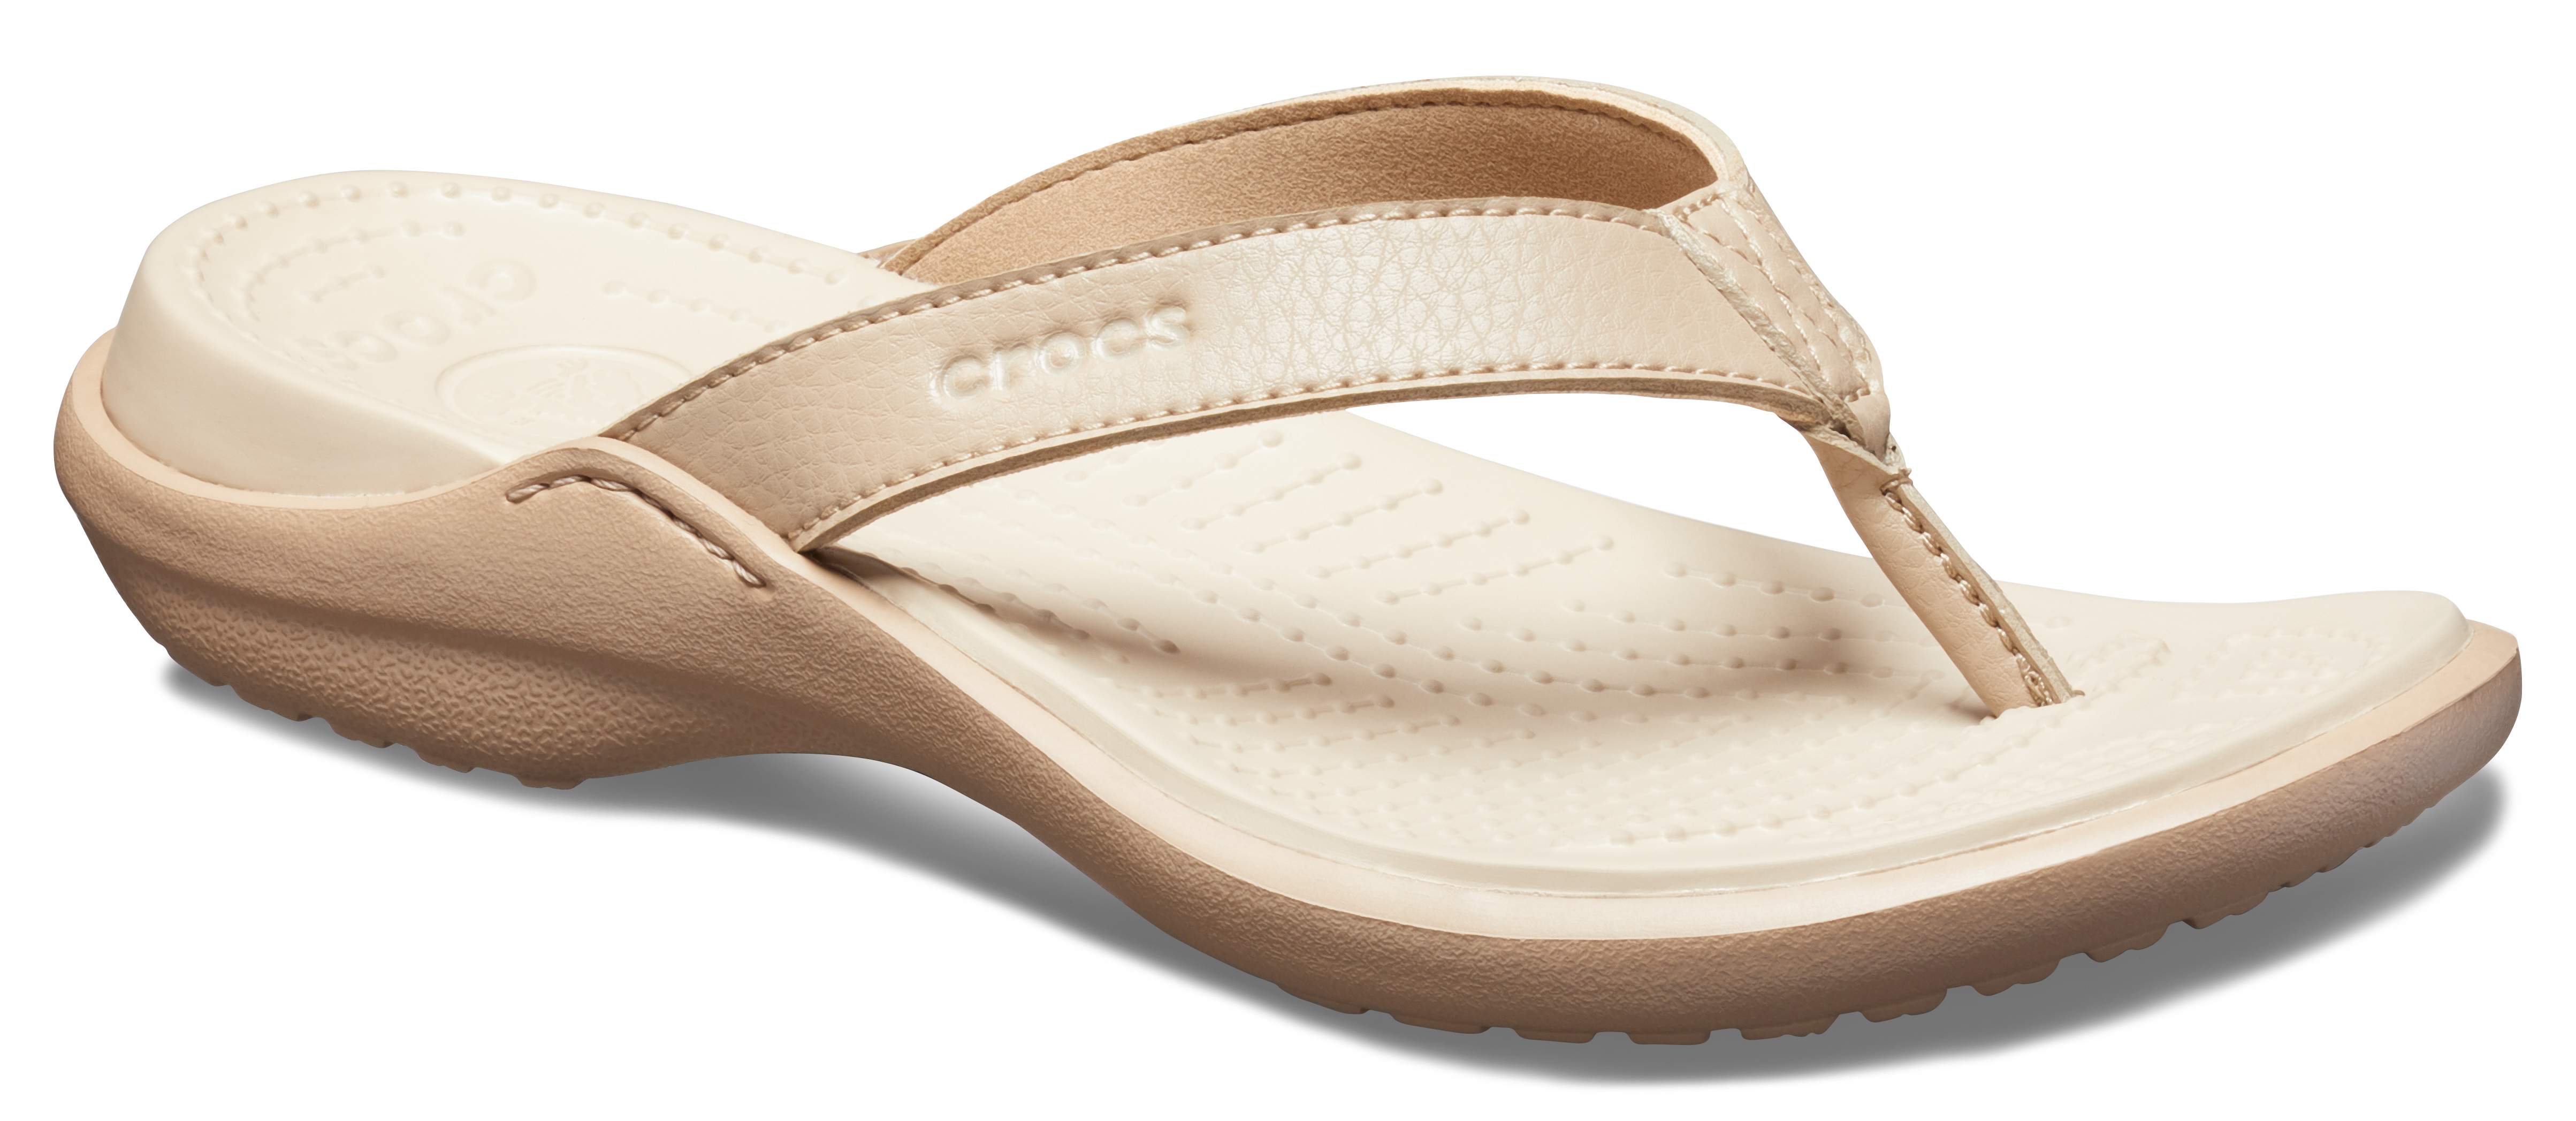 crocs women's capri v flip flop